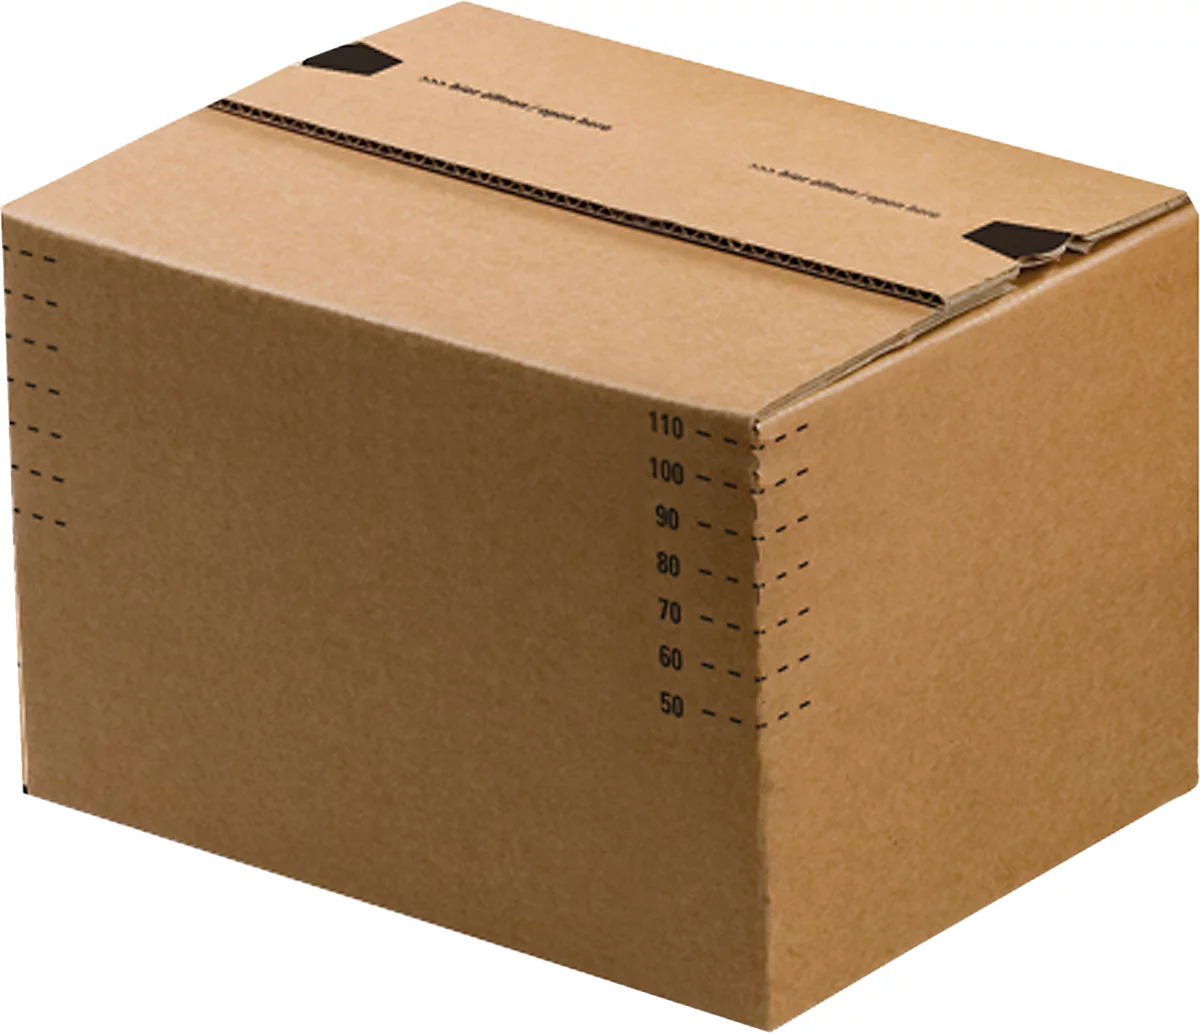 Cajas de cartón para envíos, fondo automático y tapa con solapa recerrable, hasta 20 kg, dimensiones interiores L 270 x W 140 x H 130 mm, cartón corrugado, marrón, 50 piezas